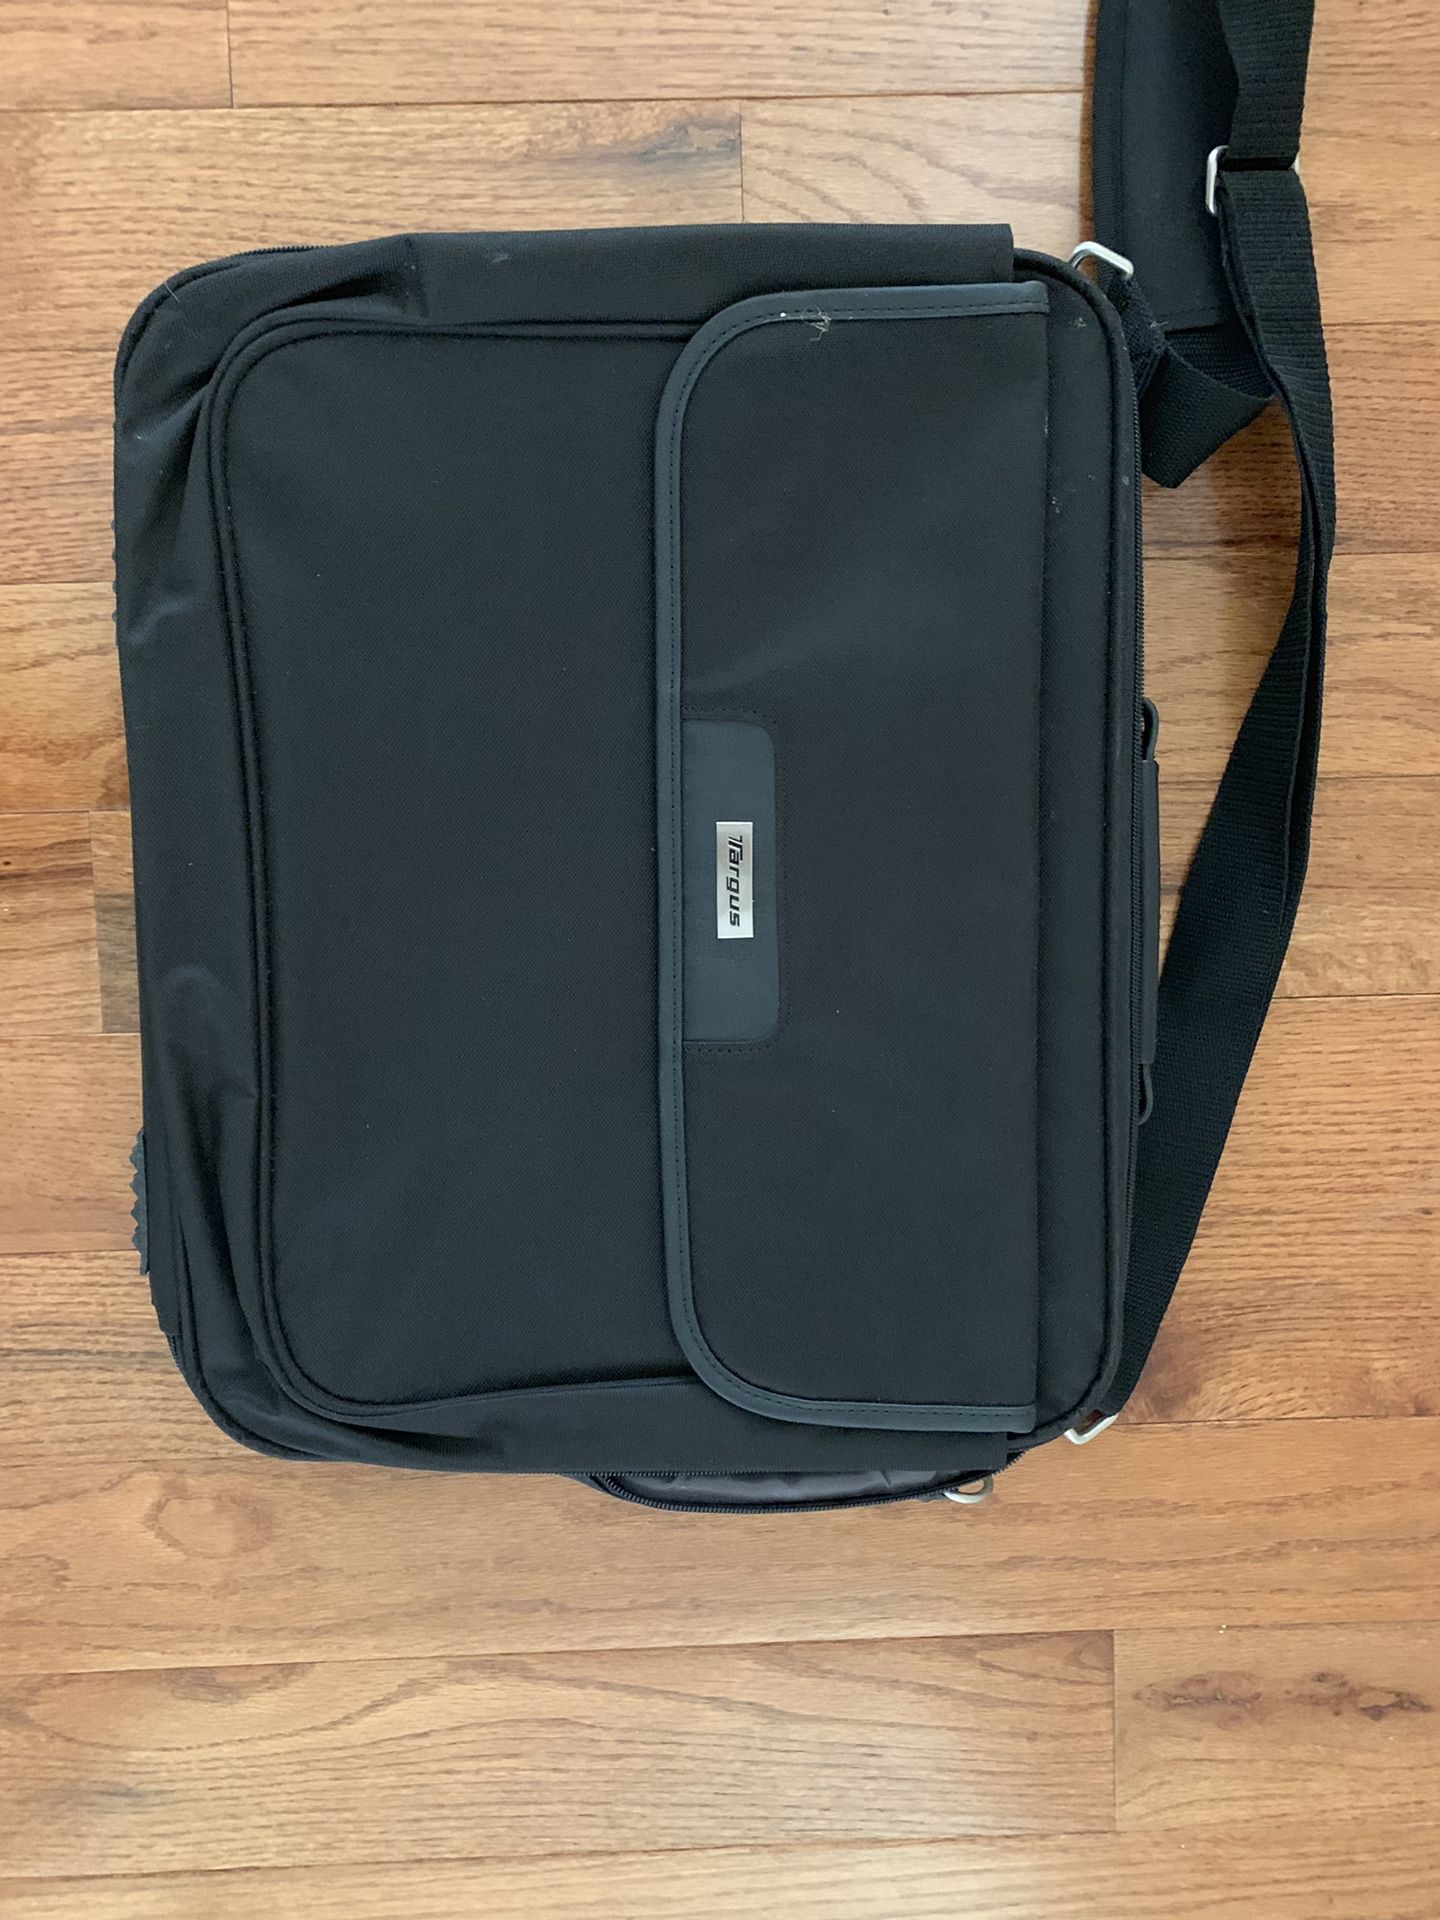 Targus Laptop Bag excellent condition